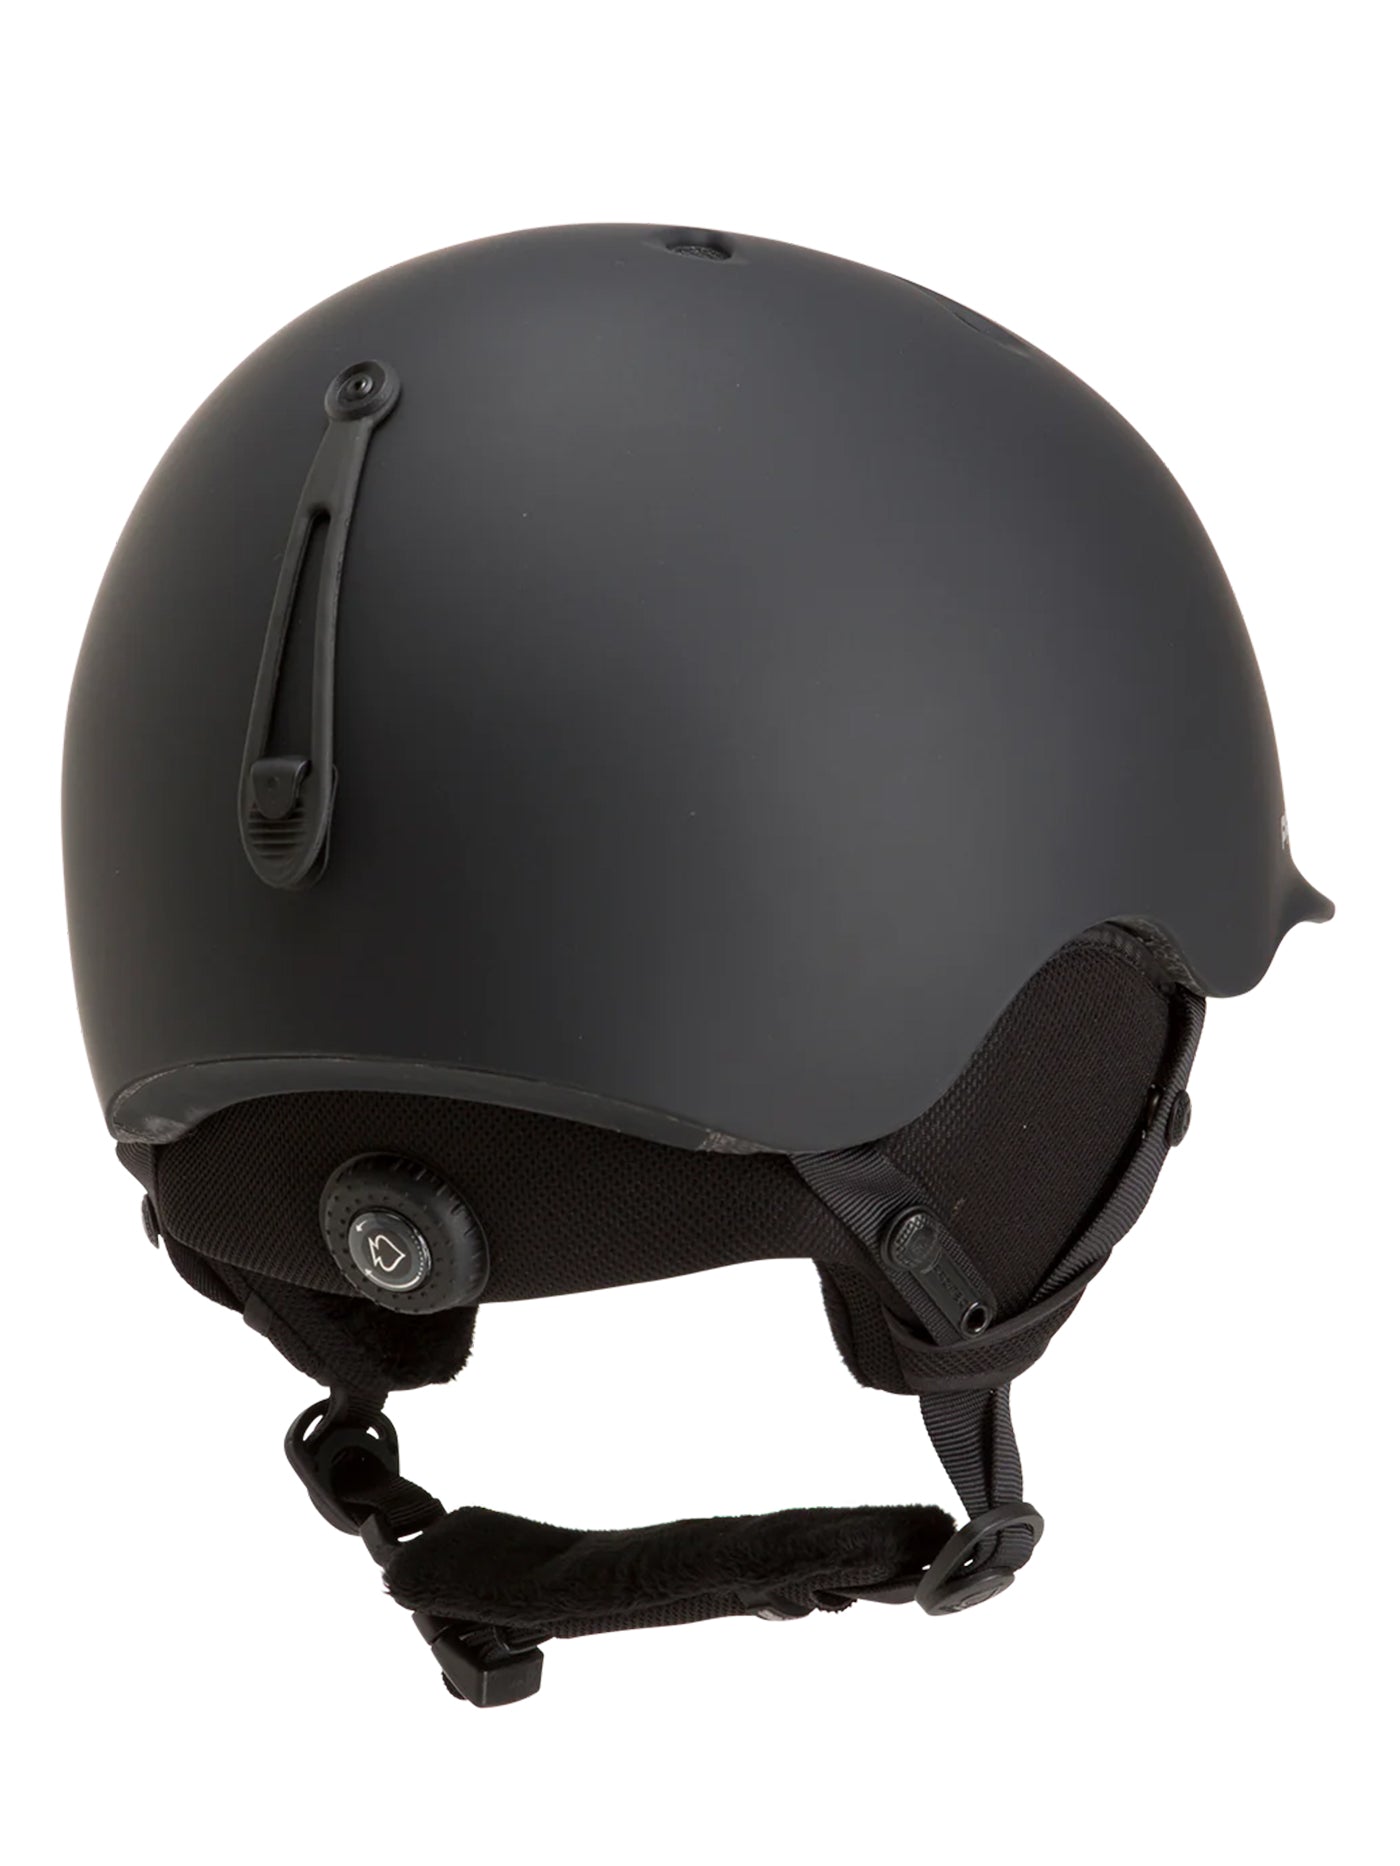 Pro-Tec Riot Mips Snowboard Helmet